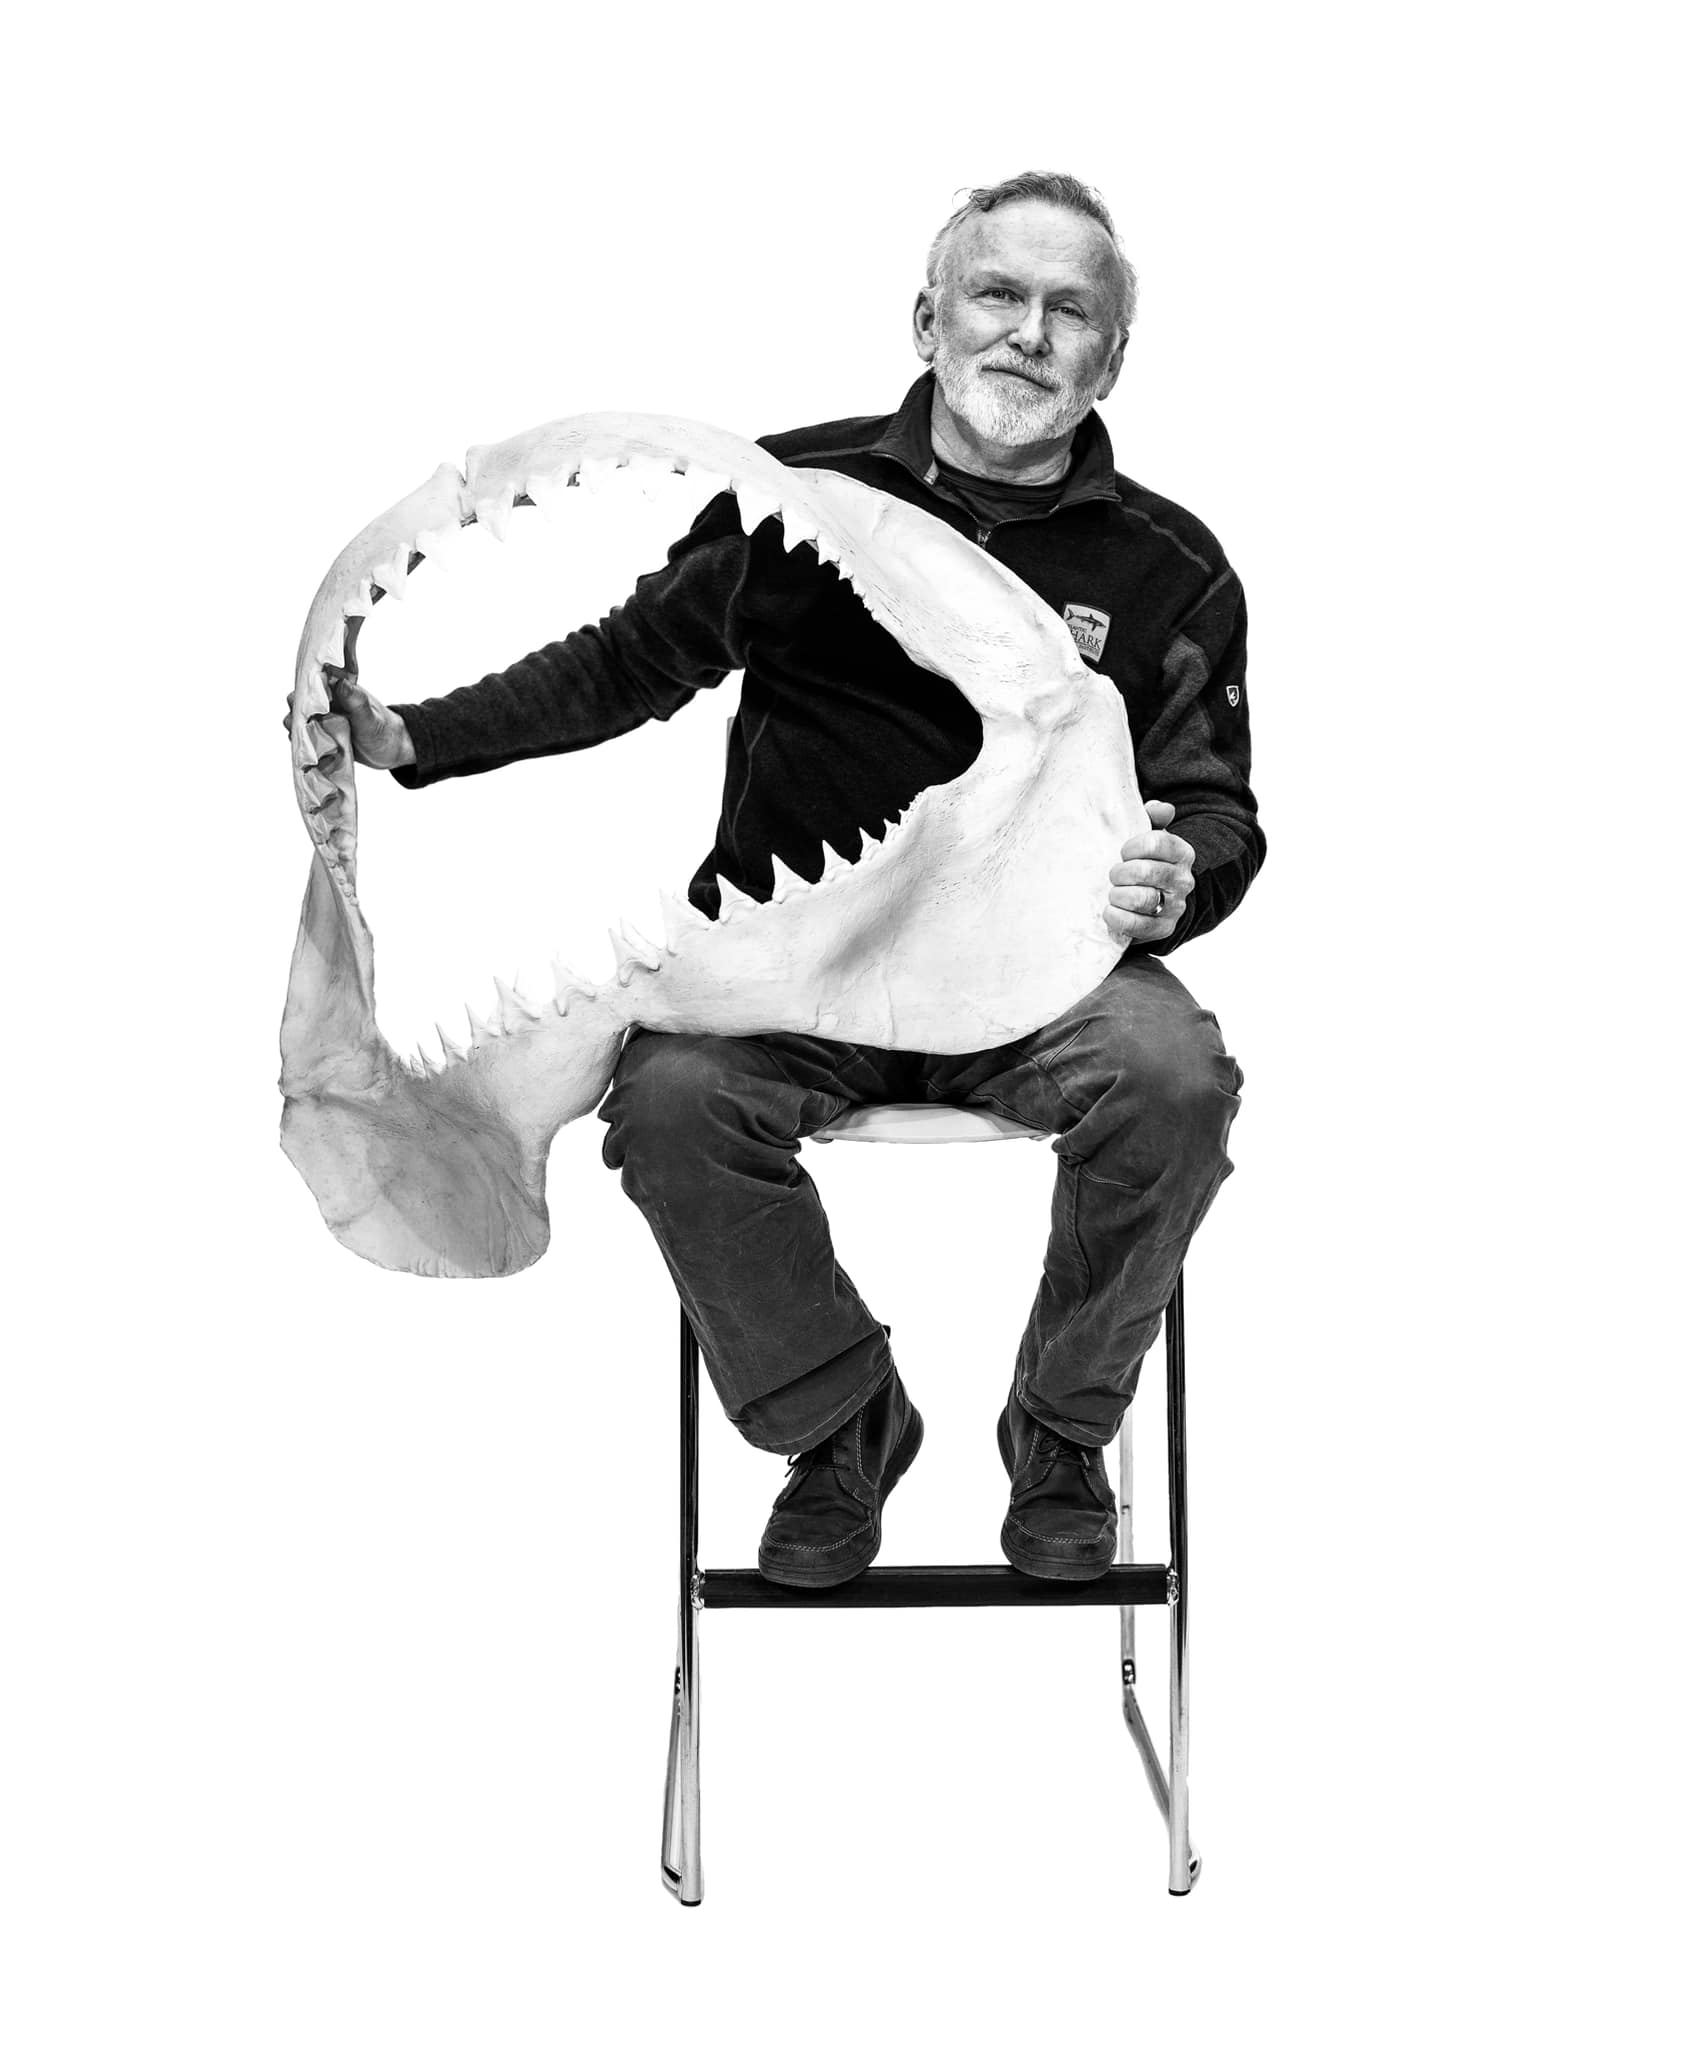 Image of John Dodd of The Atlantic Shark Institute